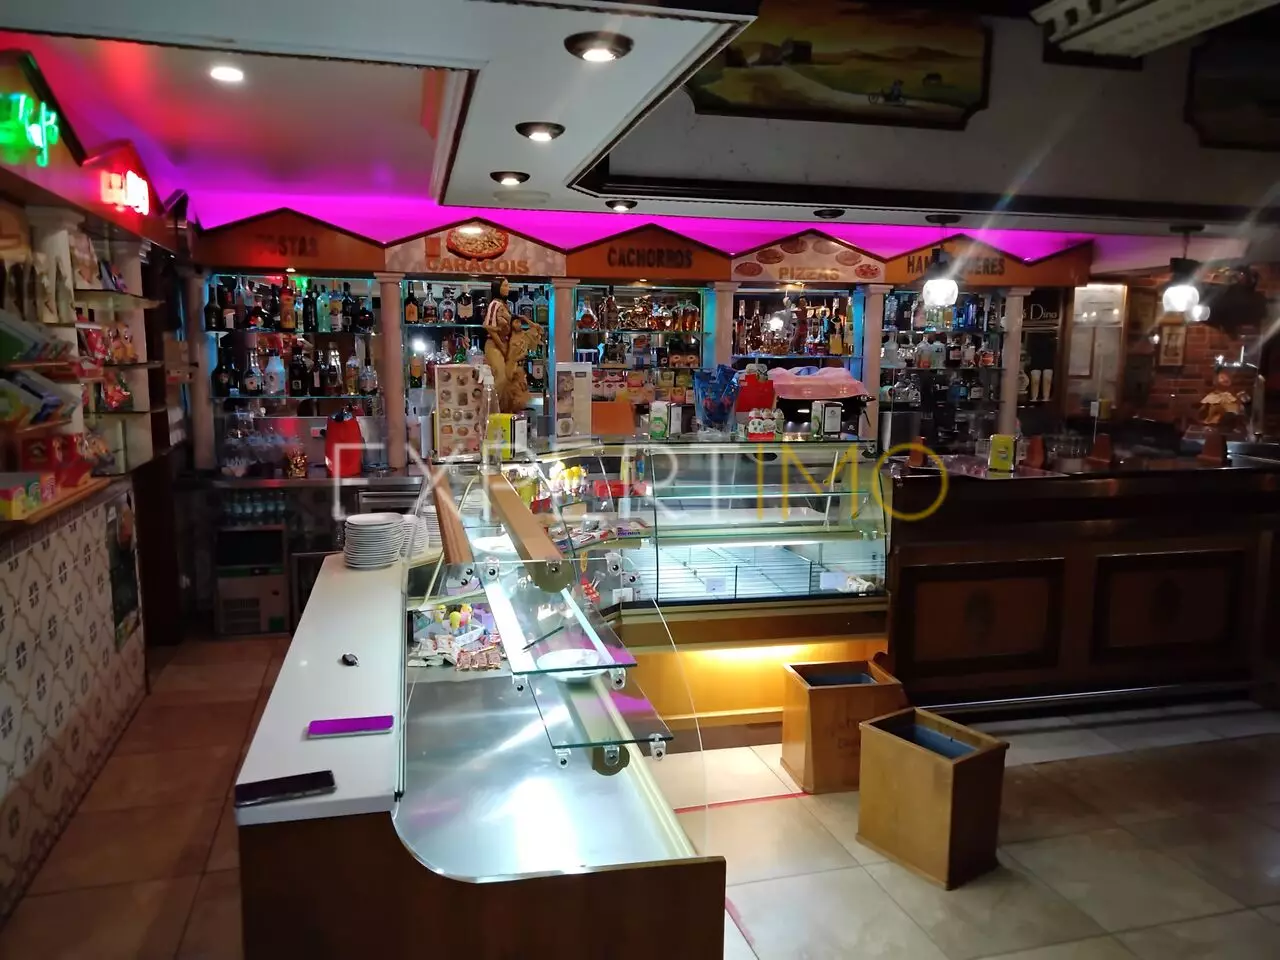 (15)Empreendimento à venda no Carriço (Café - Snack Bar e 3 Lojas)